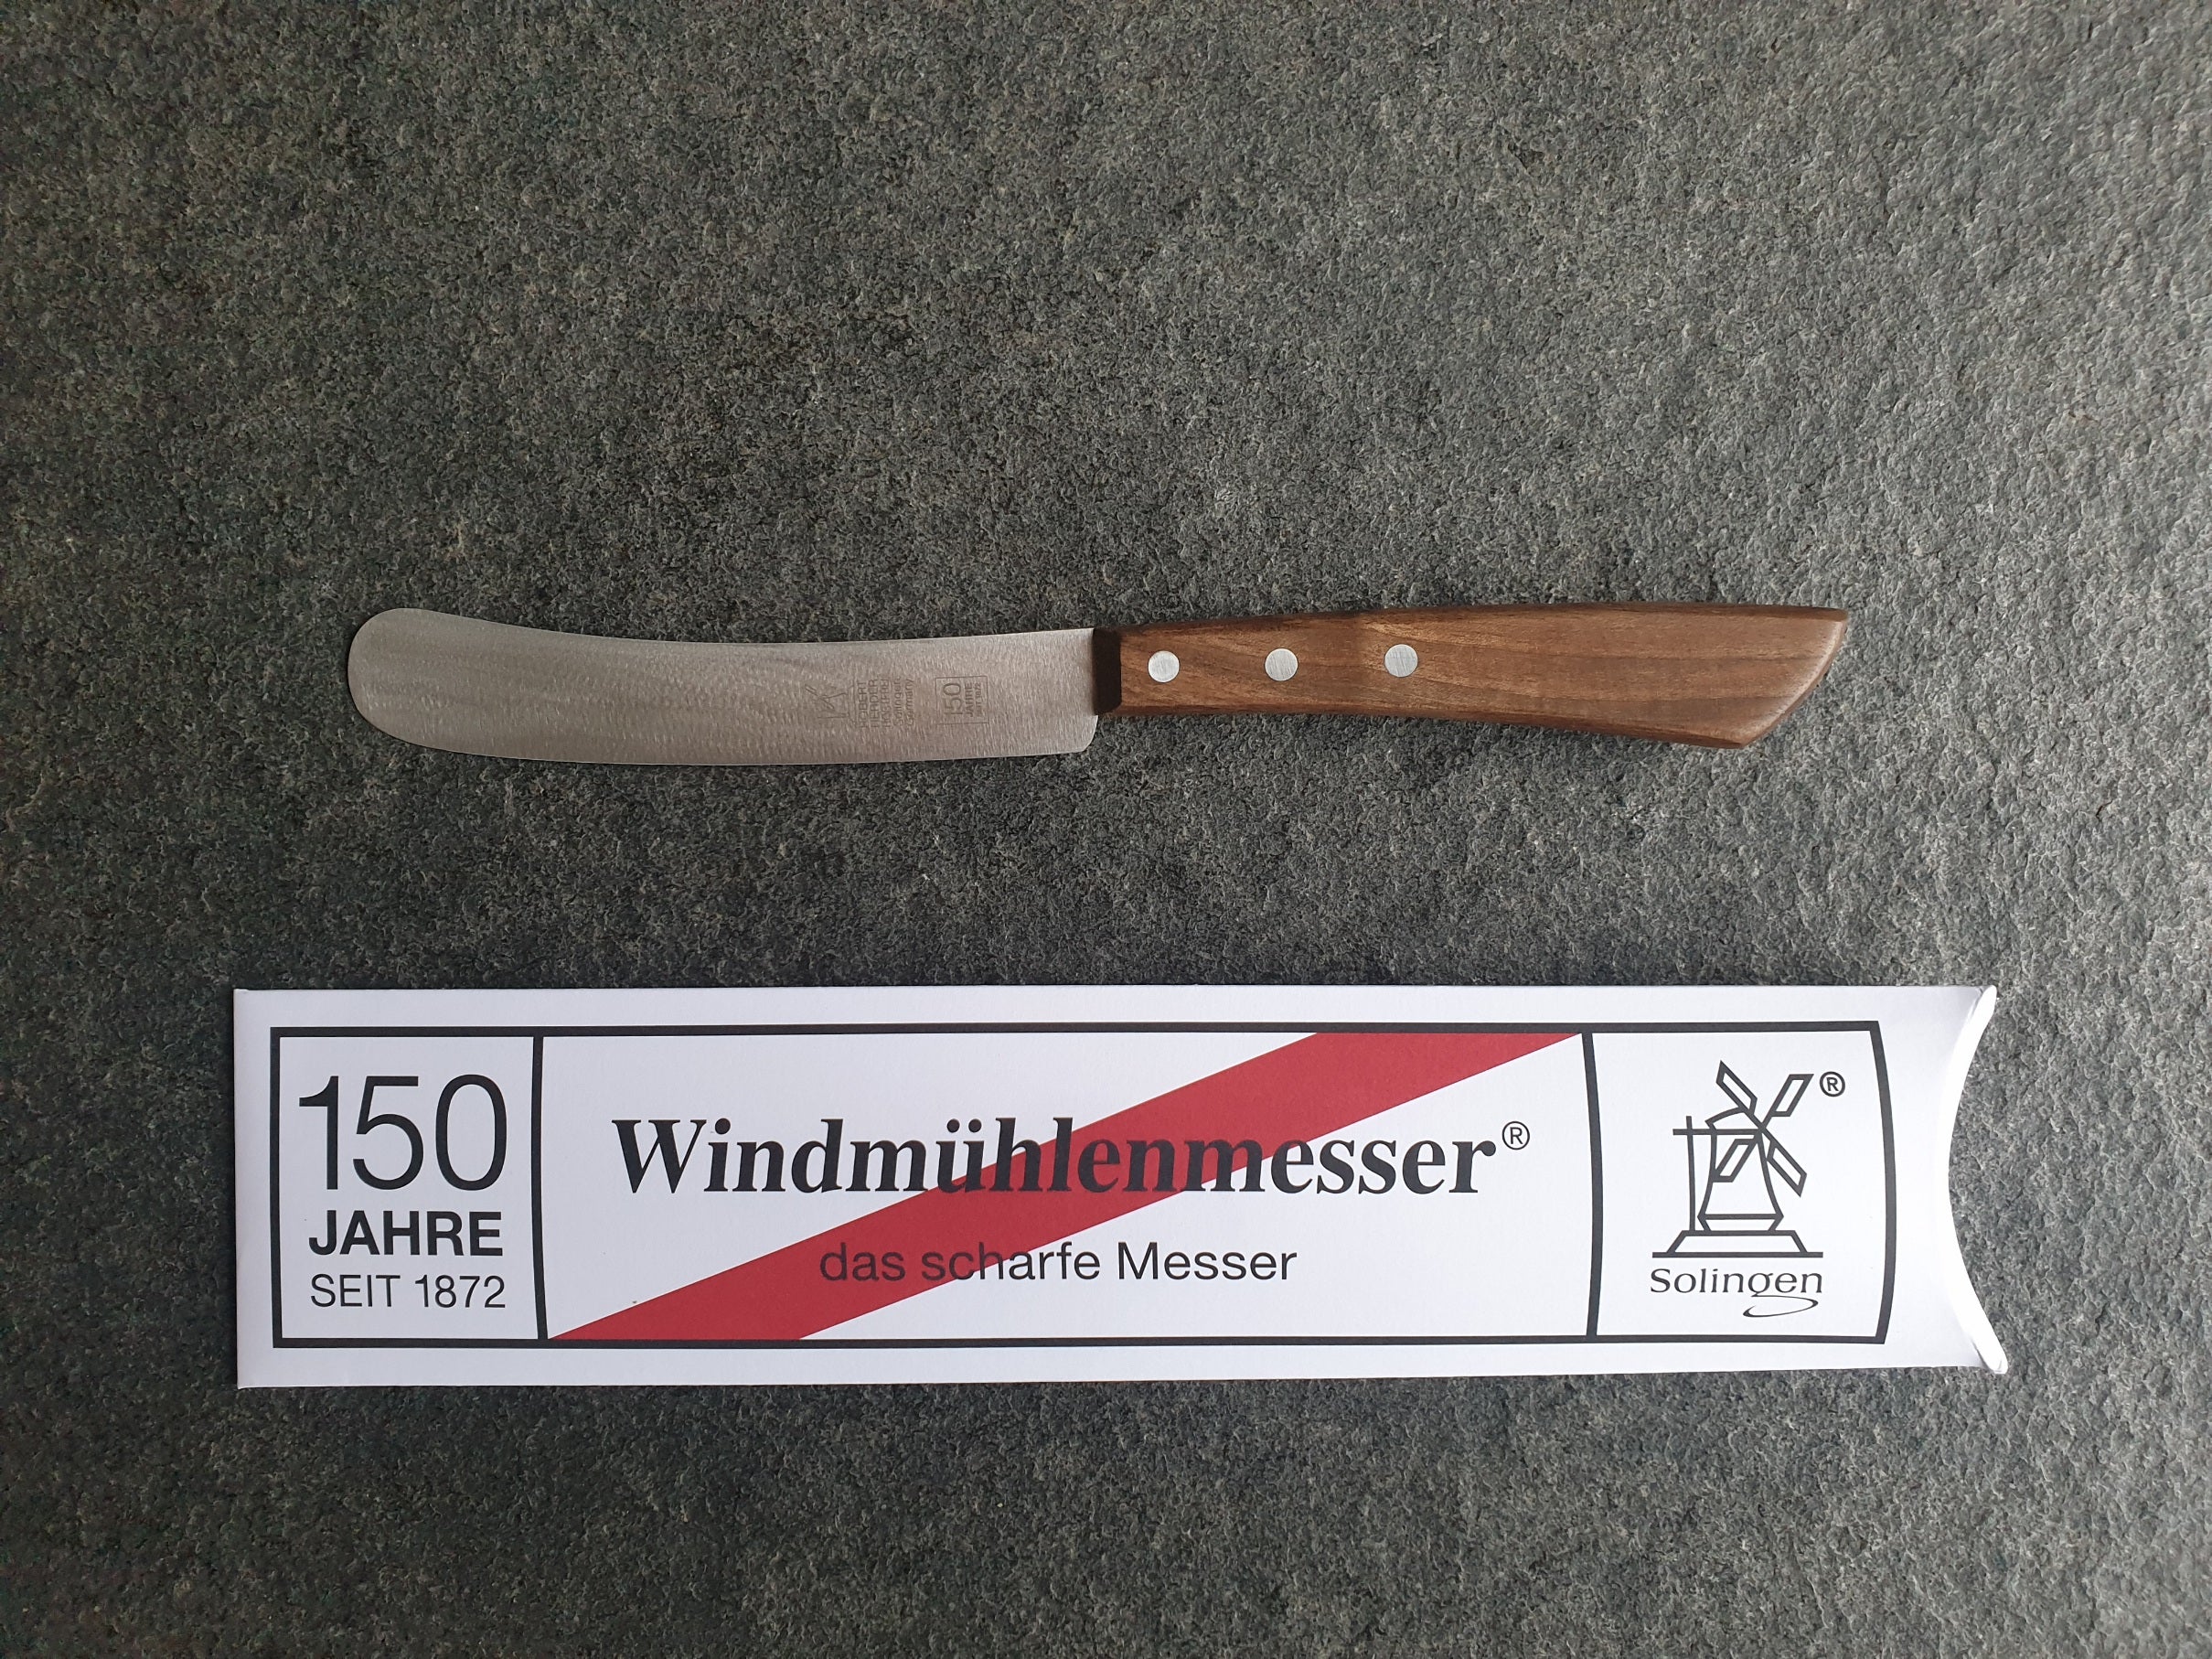 Jubiläums-Edition 150 Jahre Windmühlenmesser. Buckels mit 13 cm Klinge und Nussbaum-Griff. Besondere Verpackung.